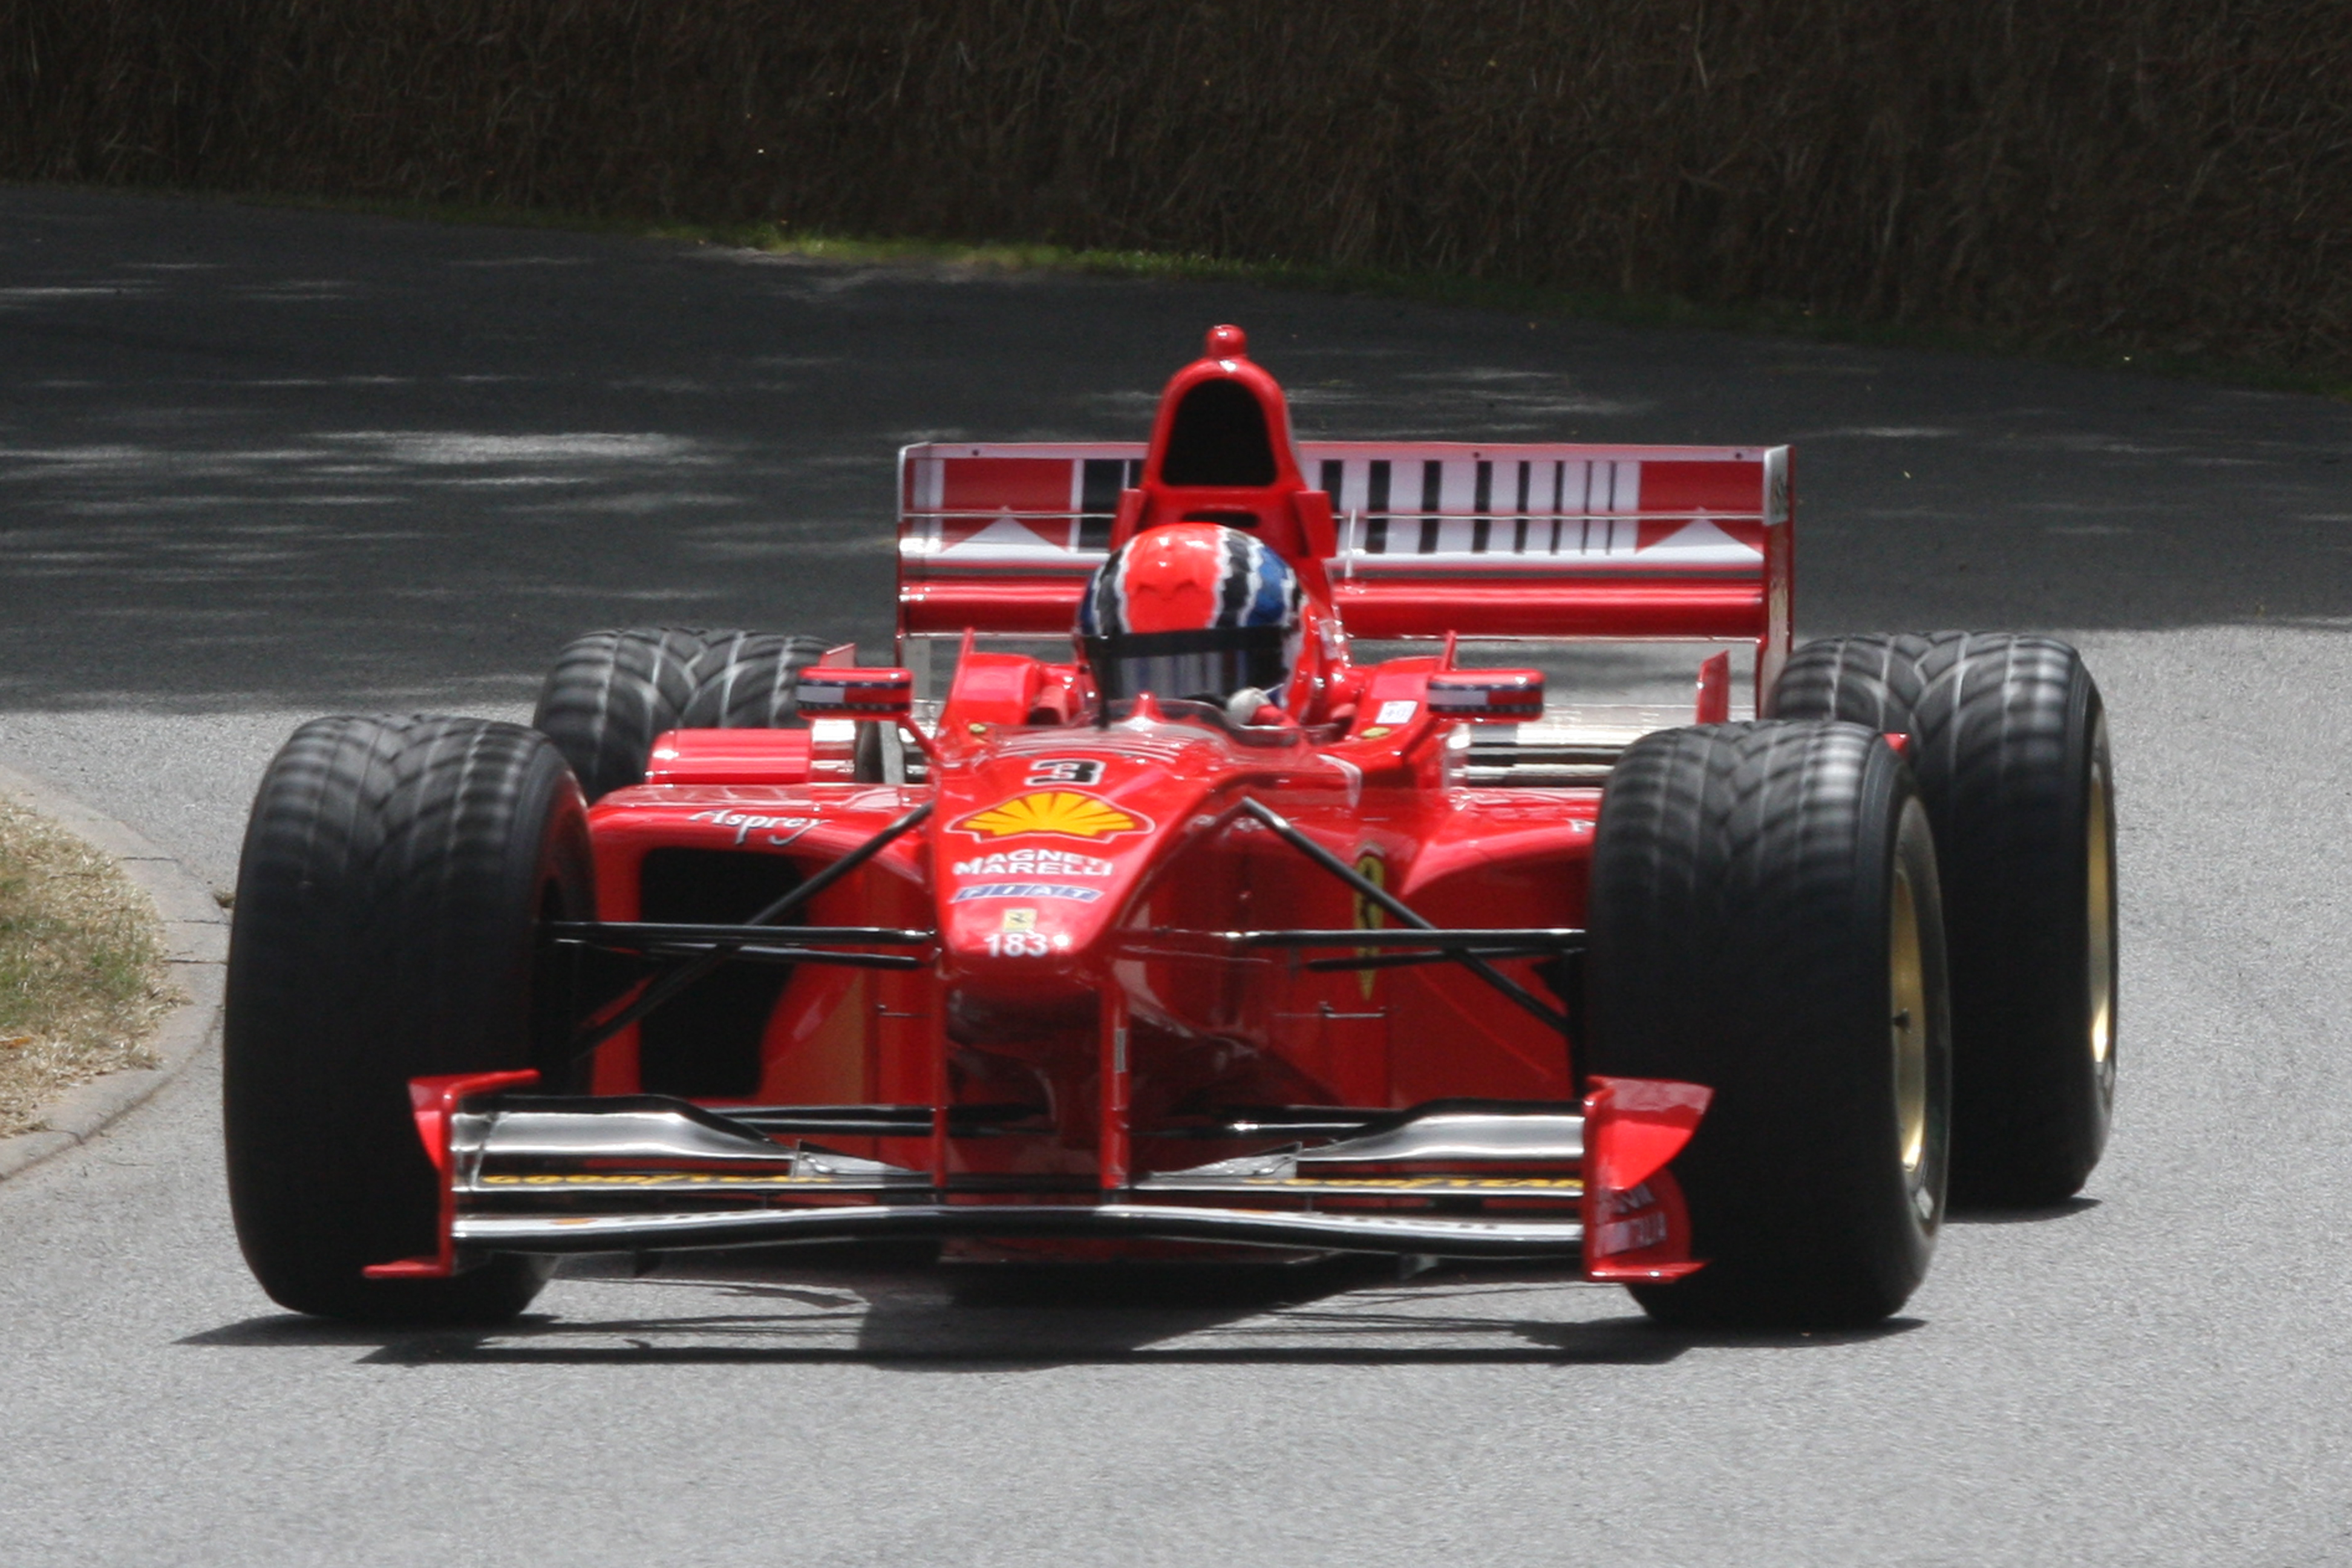 Ferrari F1 1998 photo - 1